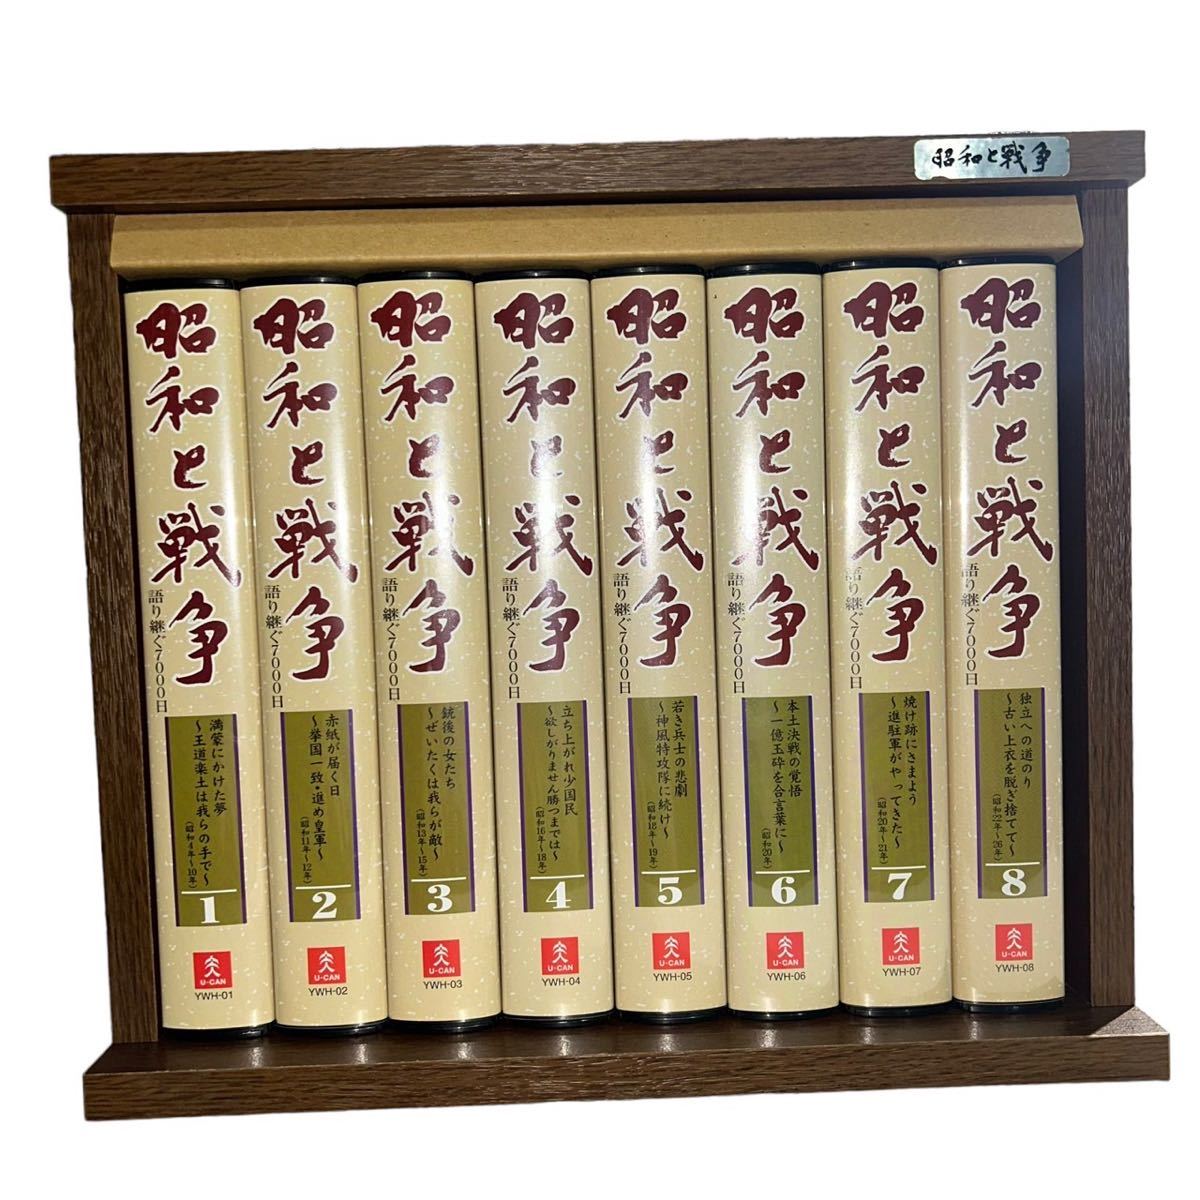 【ギ0220-30】DVD 昭和と戦争 全8巻 収納ケース付き DVD 戦争 歴史 強要 日本史 戦争 教育_画像1